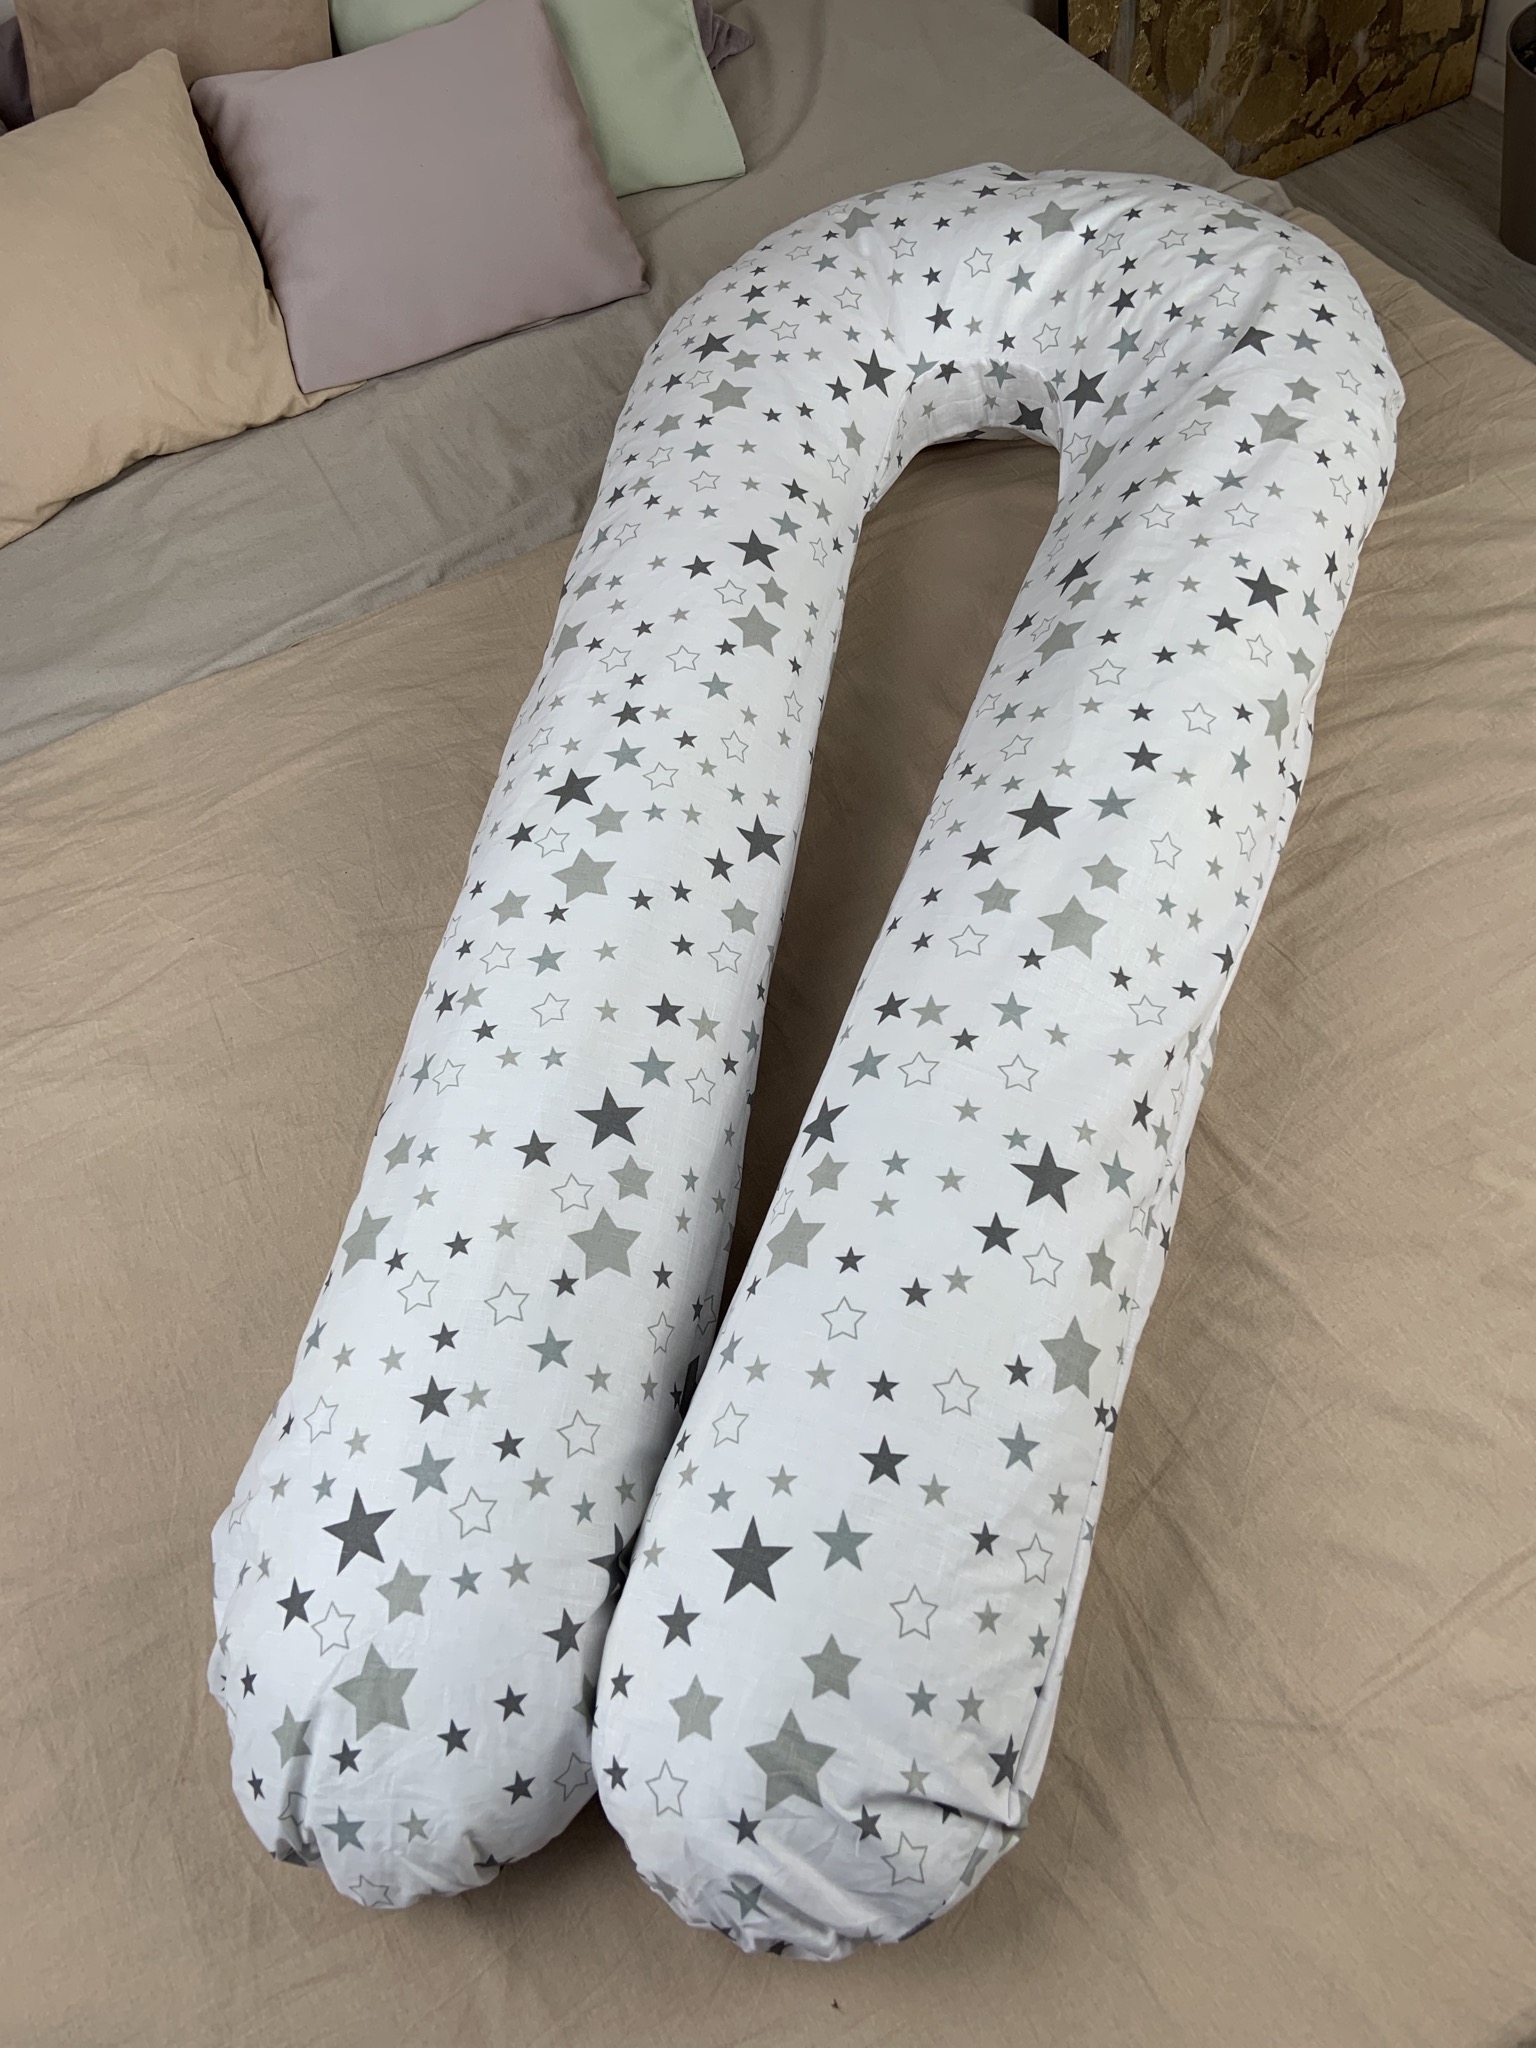 Подушка для беременных с наволочкой Coolki Stars on white XL 120x75